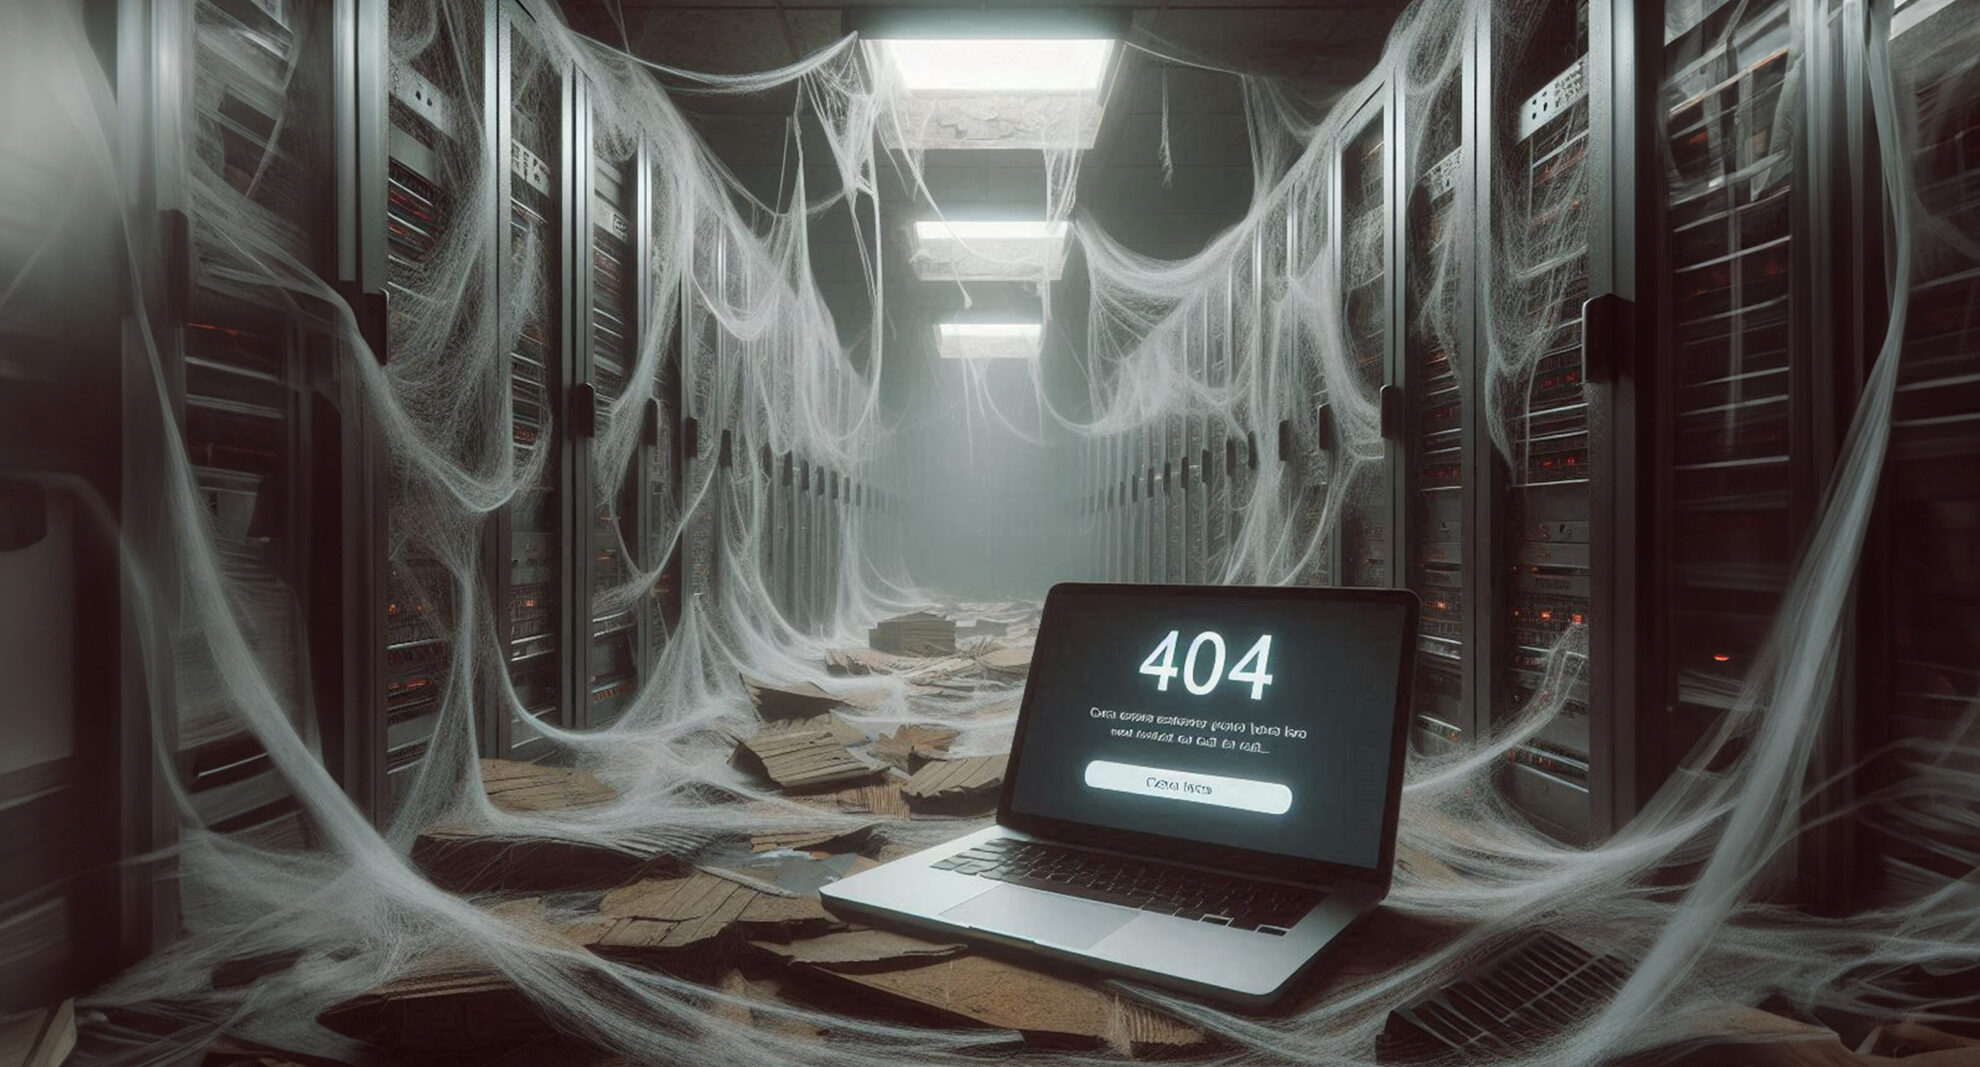 KI generiertes Bild: Ein verlassener Serverraum mit Spinnenweben, in dem ein Macbook steht, auf dessen Bildschirm eine Webseite mit dem Fehlercode 404 zu sehen ist